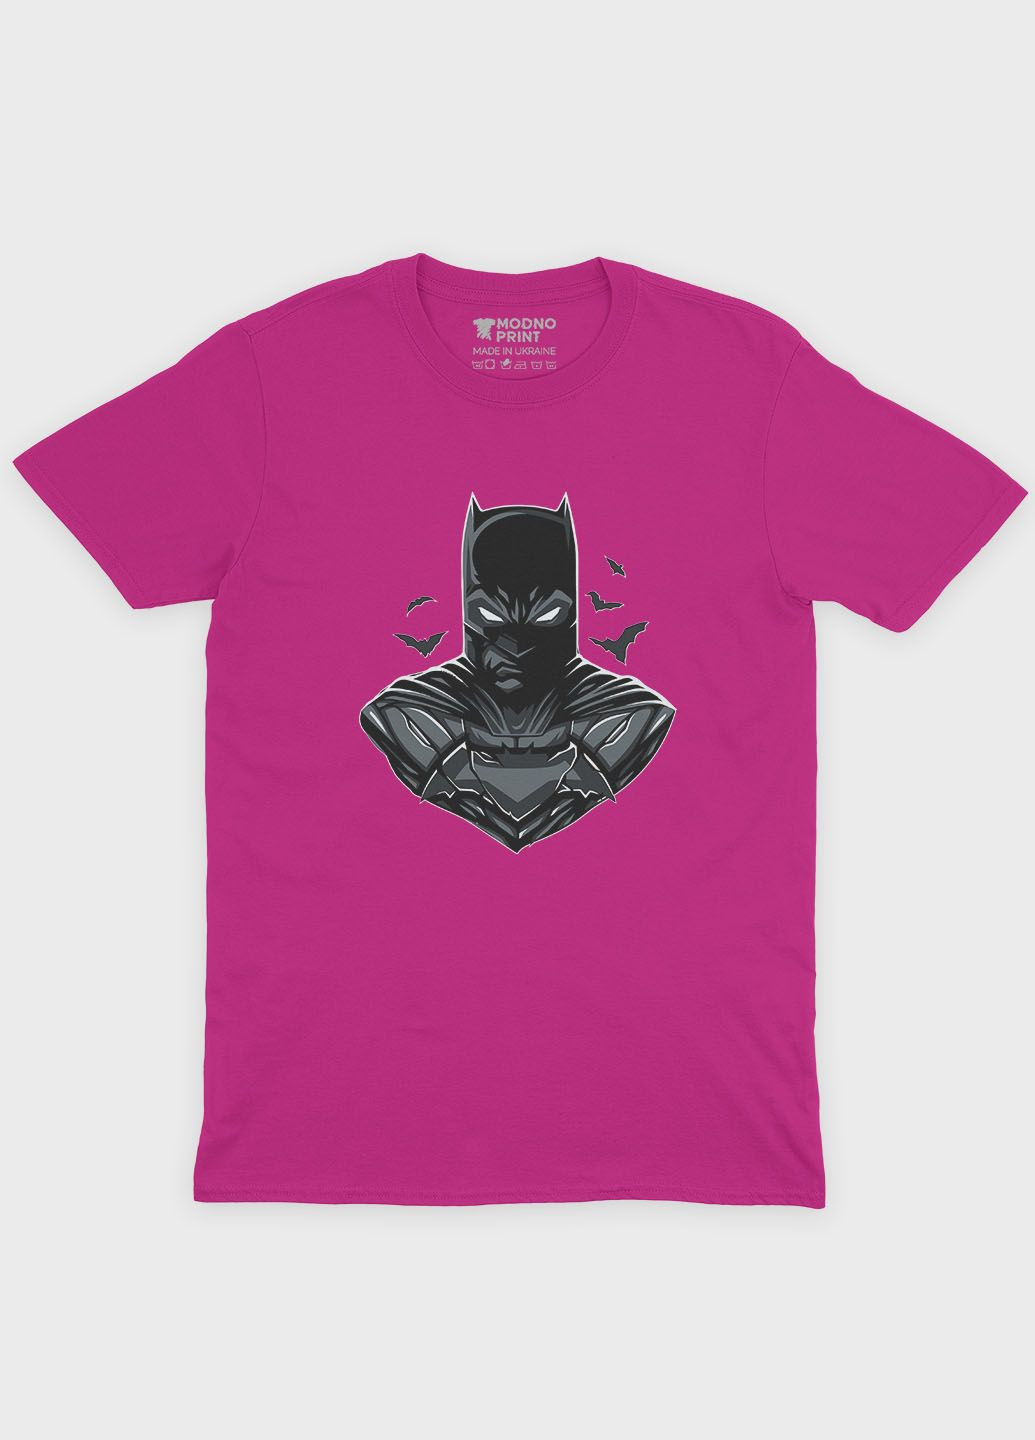 Розовая демисезонная футболка для девочки с принтом супергероя - бэтмен (ts001-1-fuxj-006-003-026-g) Modno